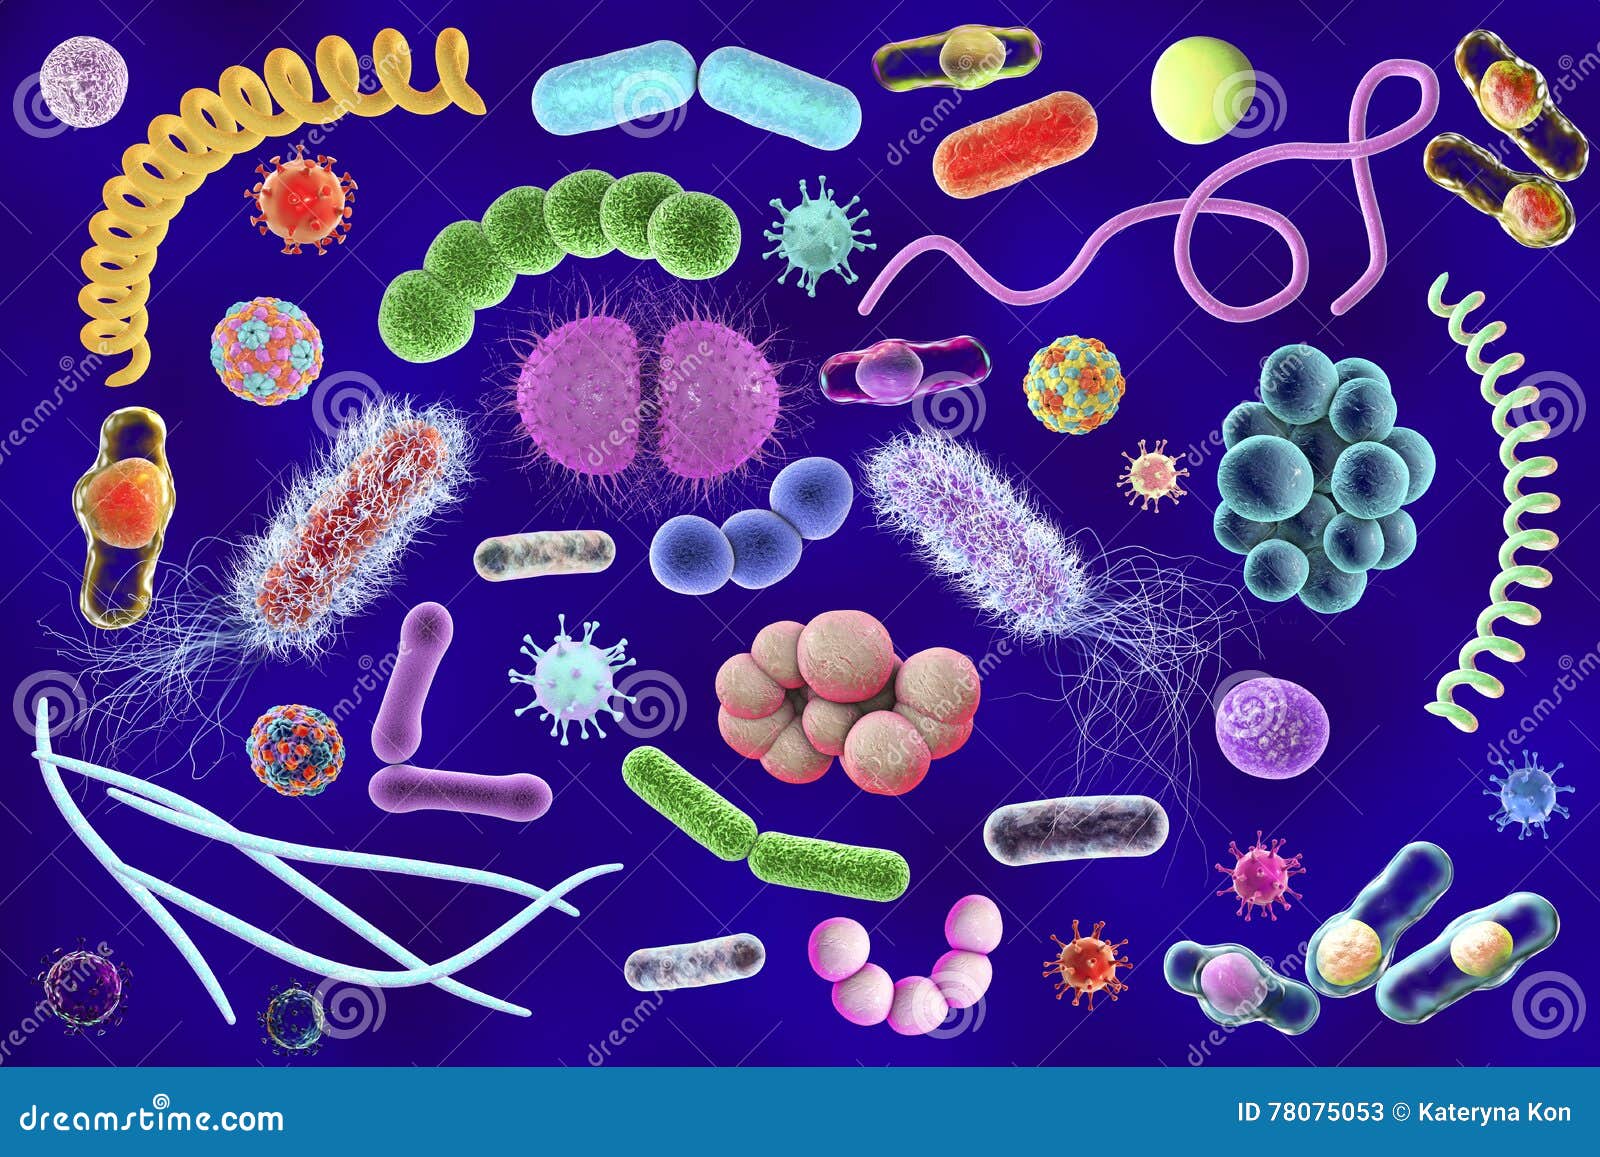 Три организма относящиеся к бактериям